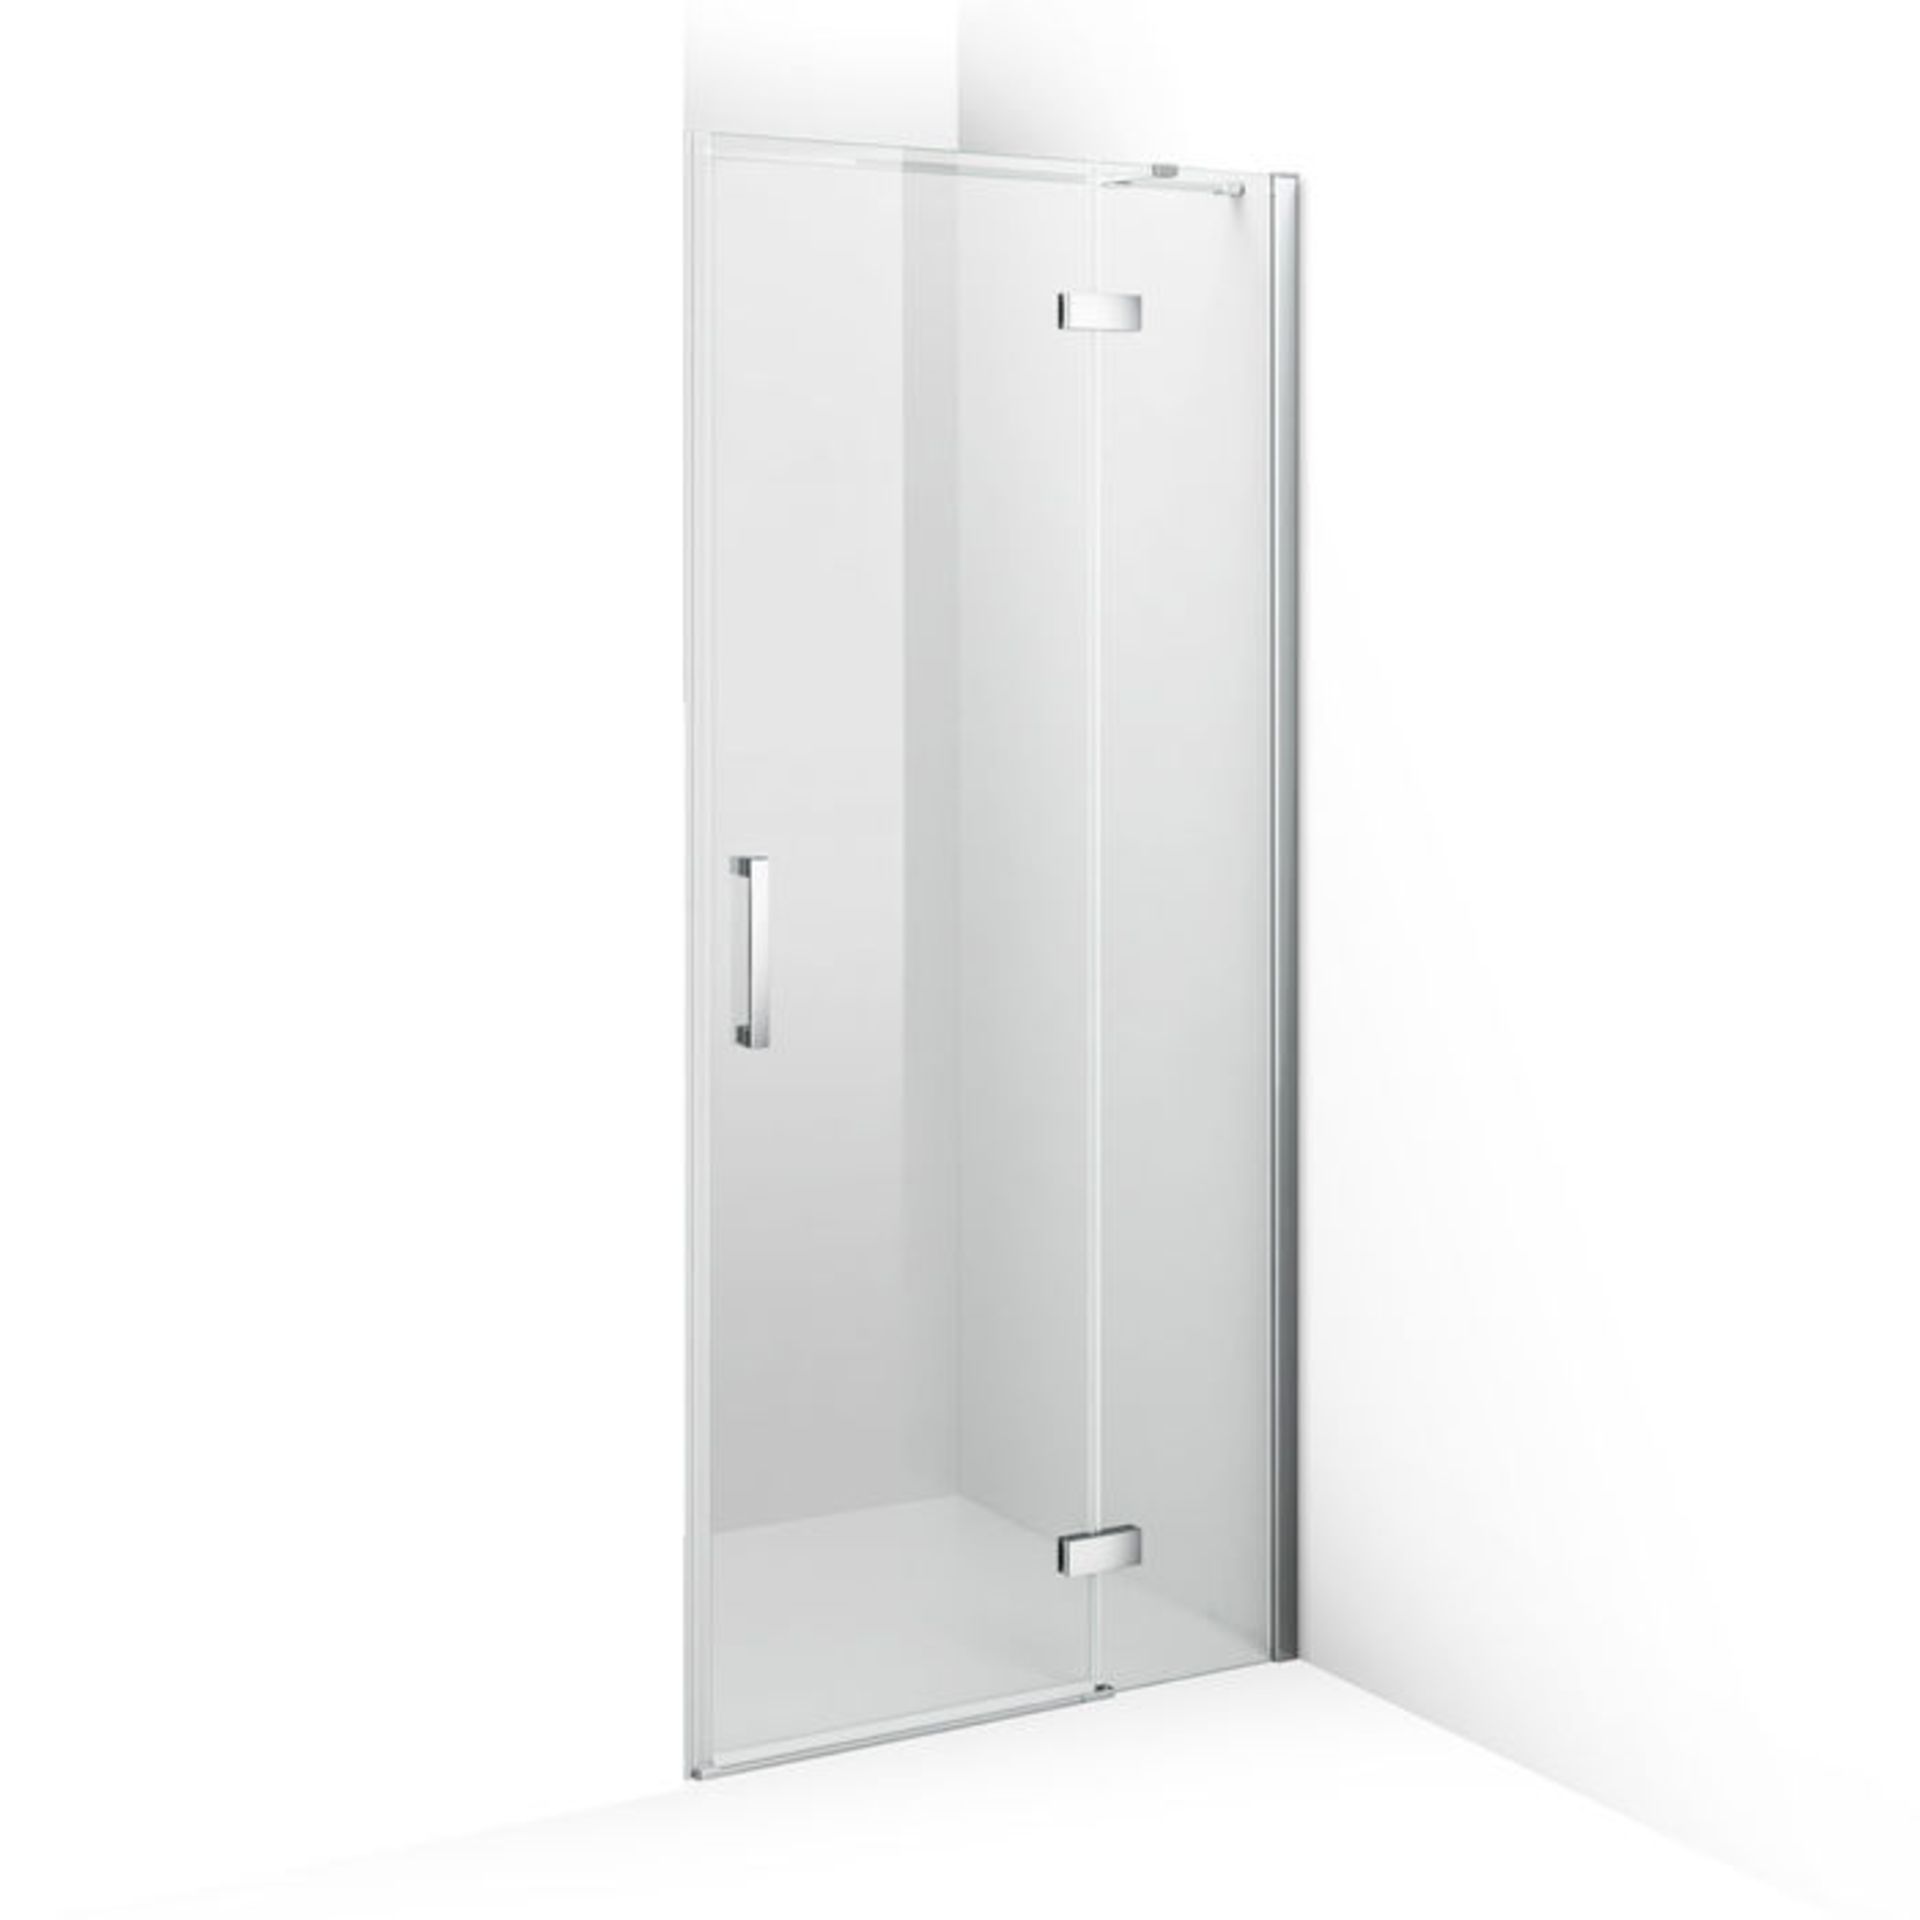 (P150) 800mm - 8mm - Premium EasyClean Hinged Shower Door. RRP £319.99. 8mm EasyClean glass - Our - Image 4 of 4